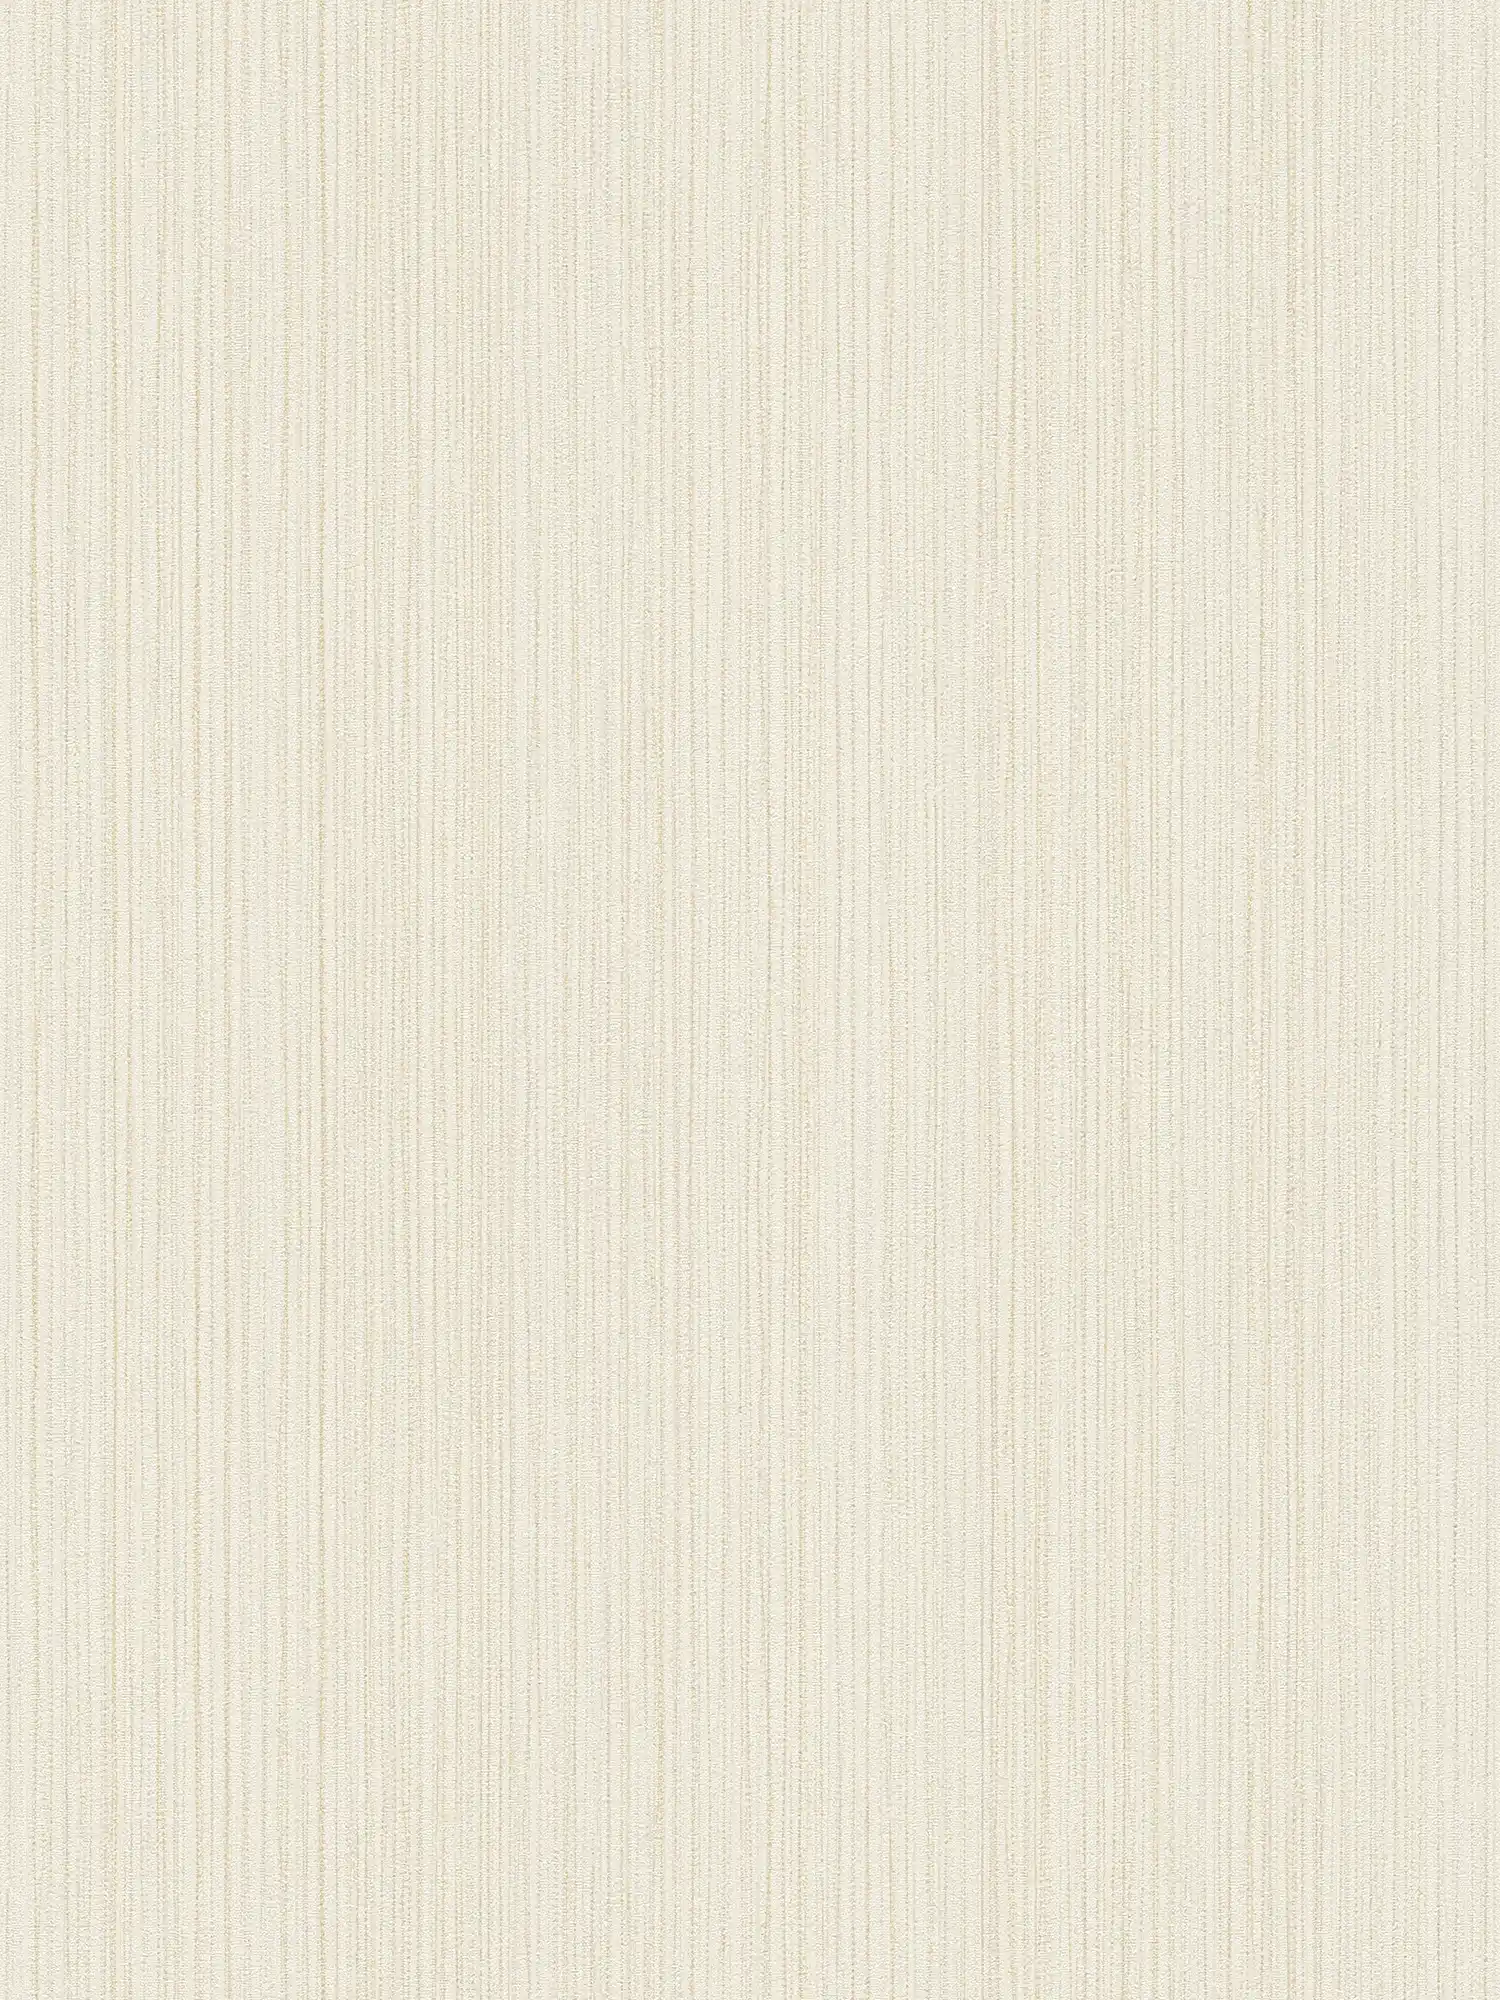         Papier peint uni ivoire avec structure de lignes - crème
    